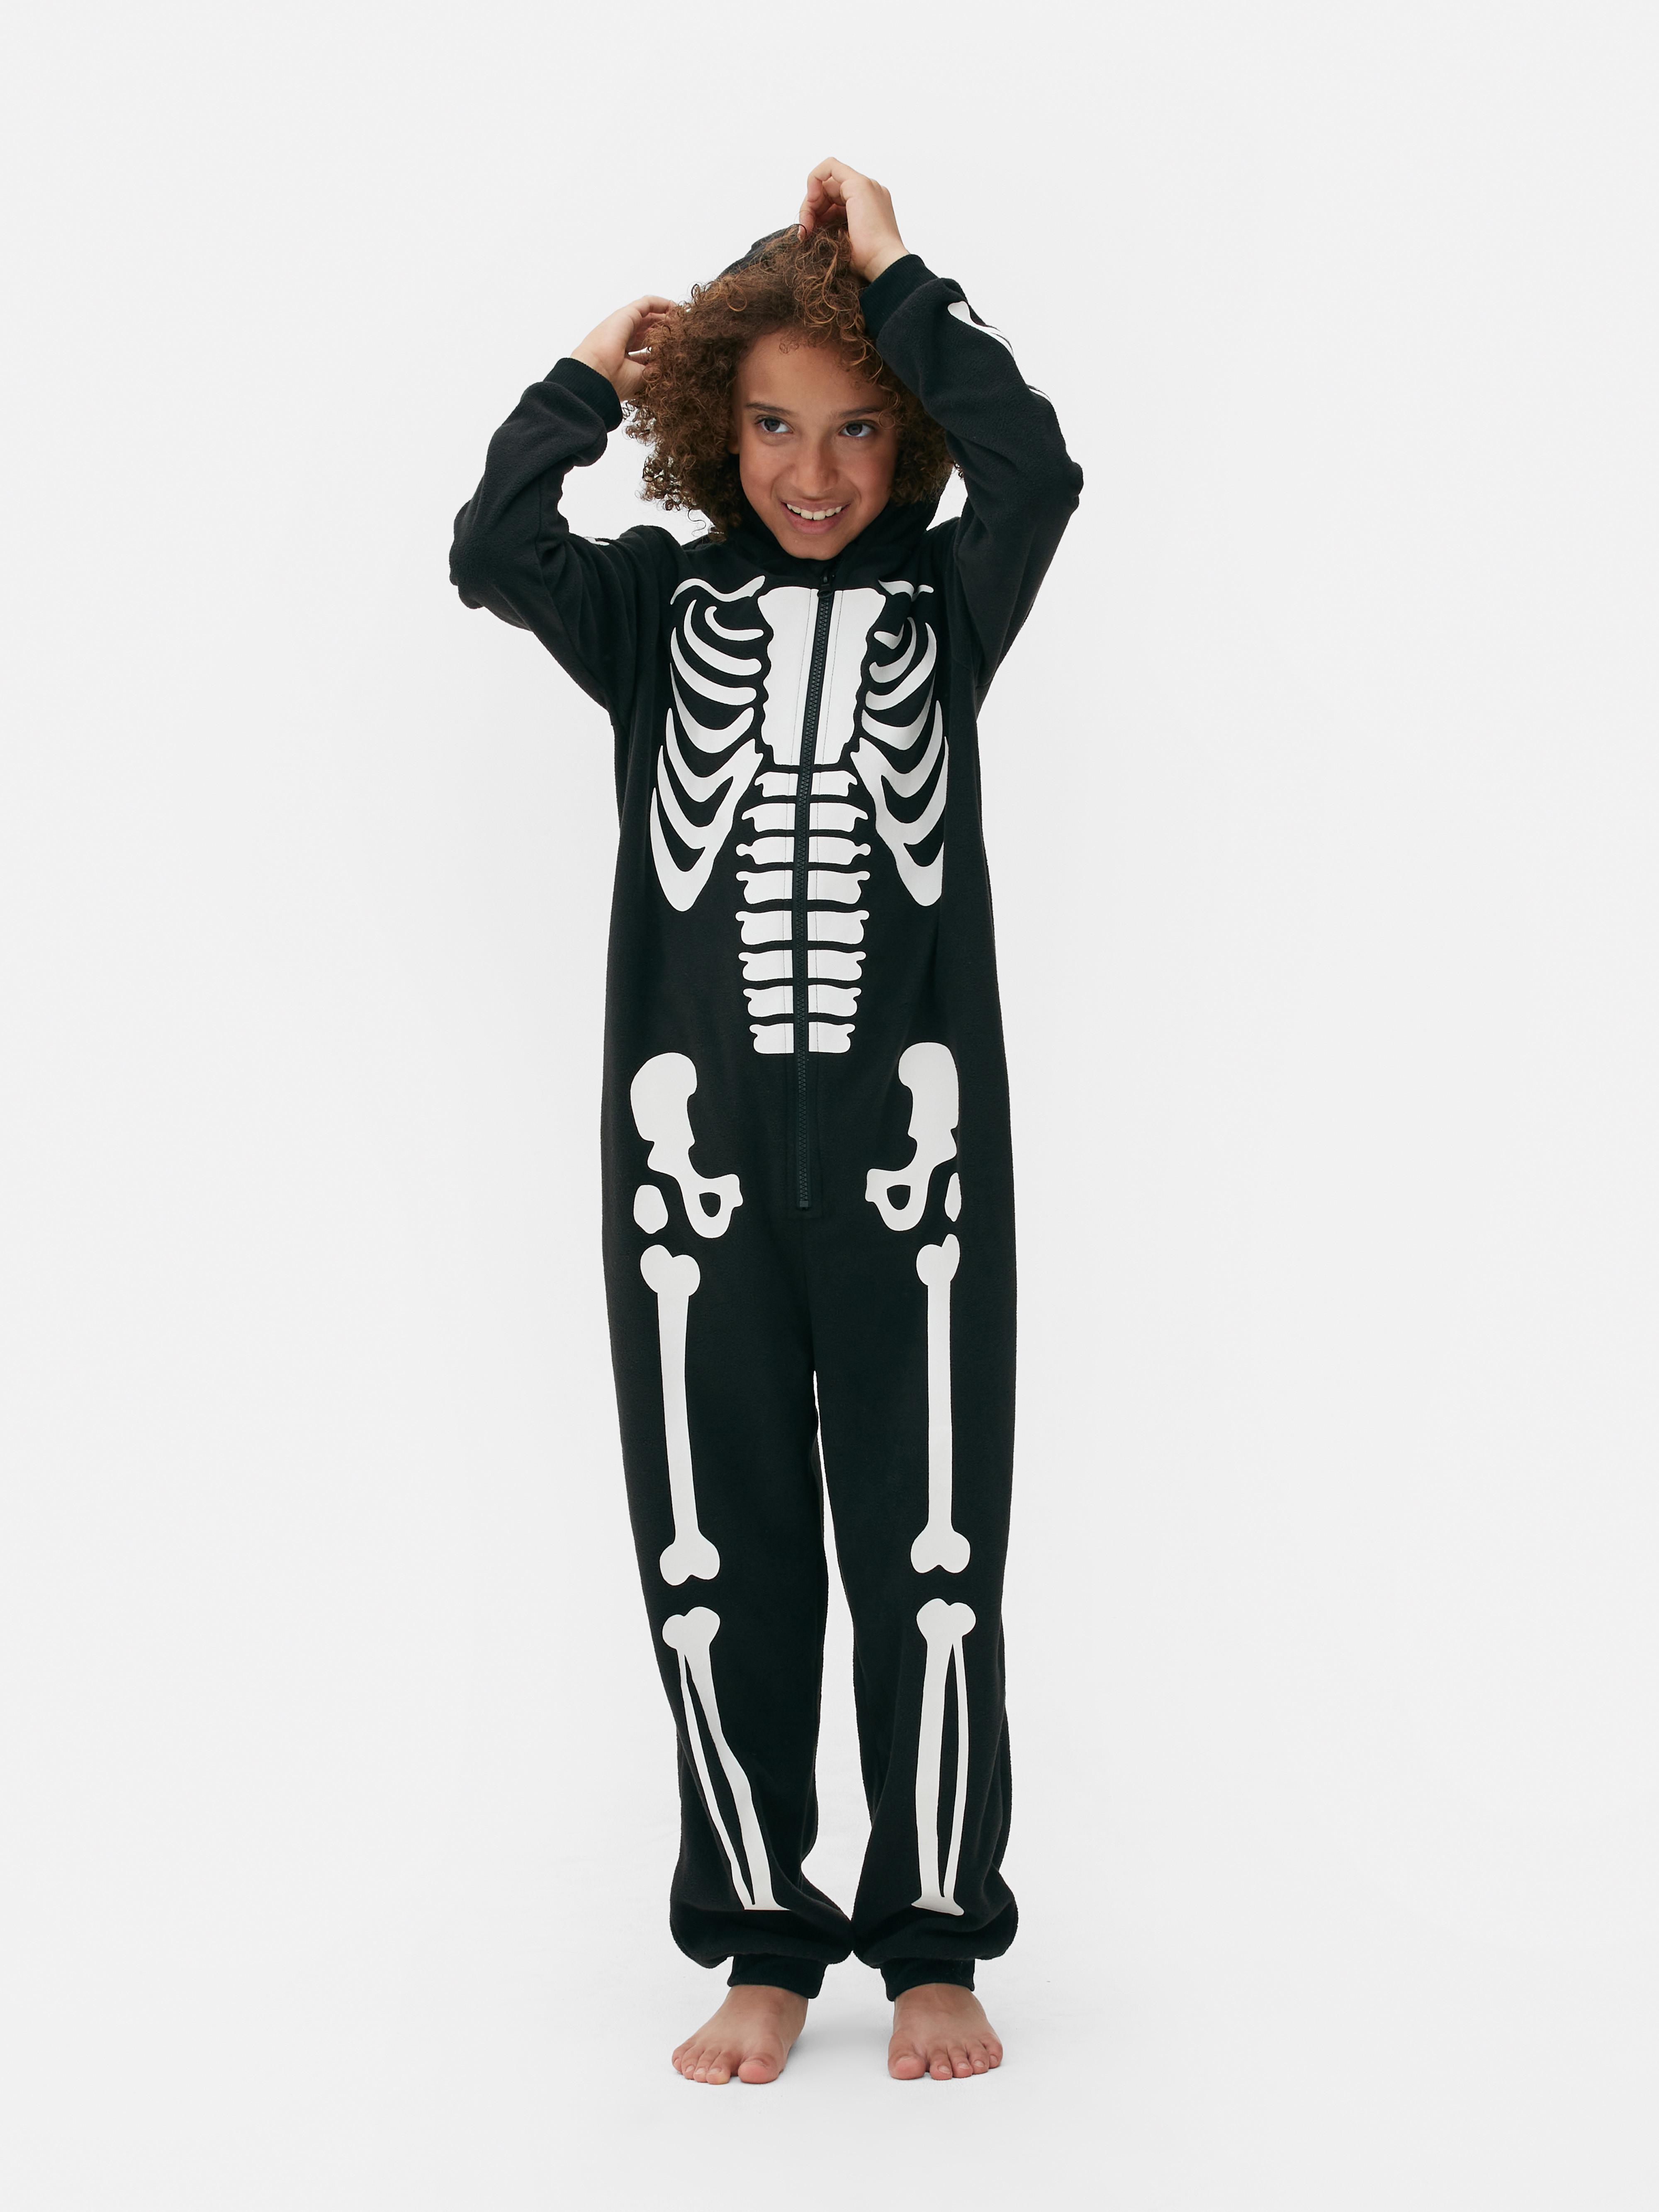 Skeleton Dress Up Onesie